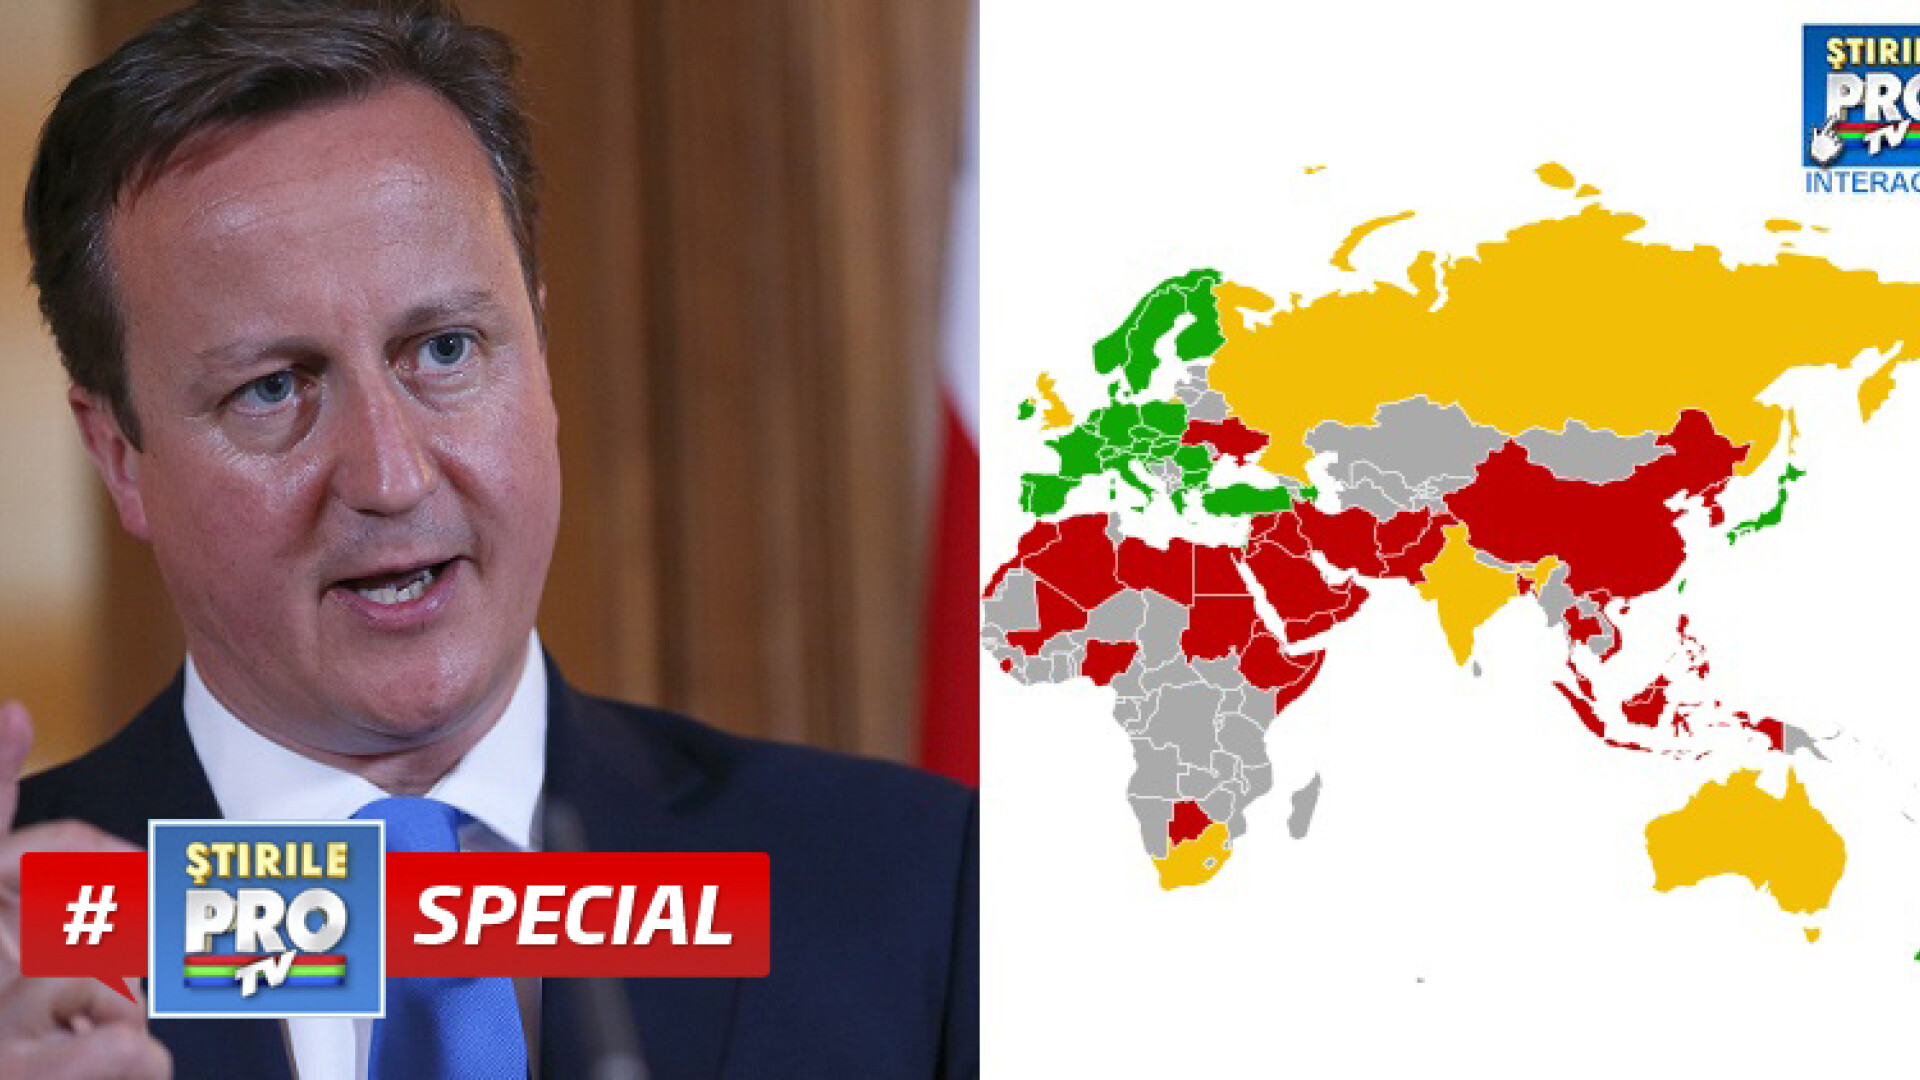 Special David Cameron